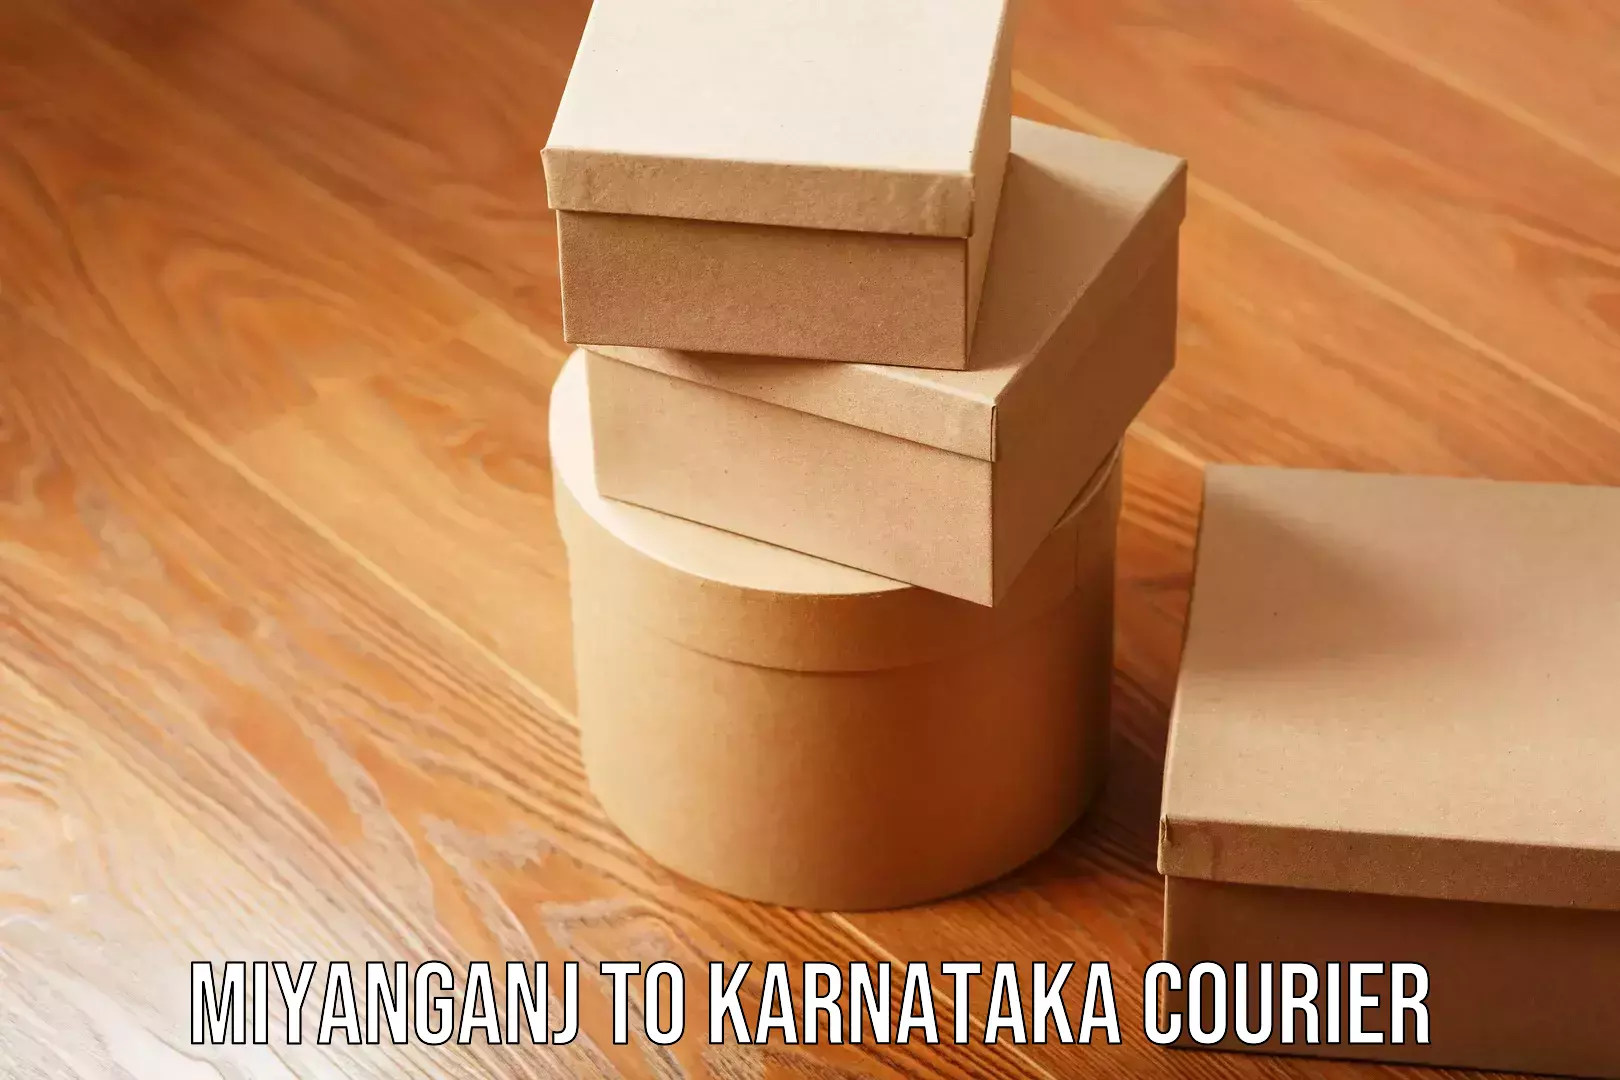 Furniture moving assistance Miyanganj to Karnataka